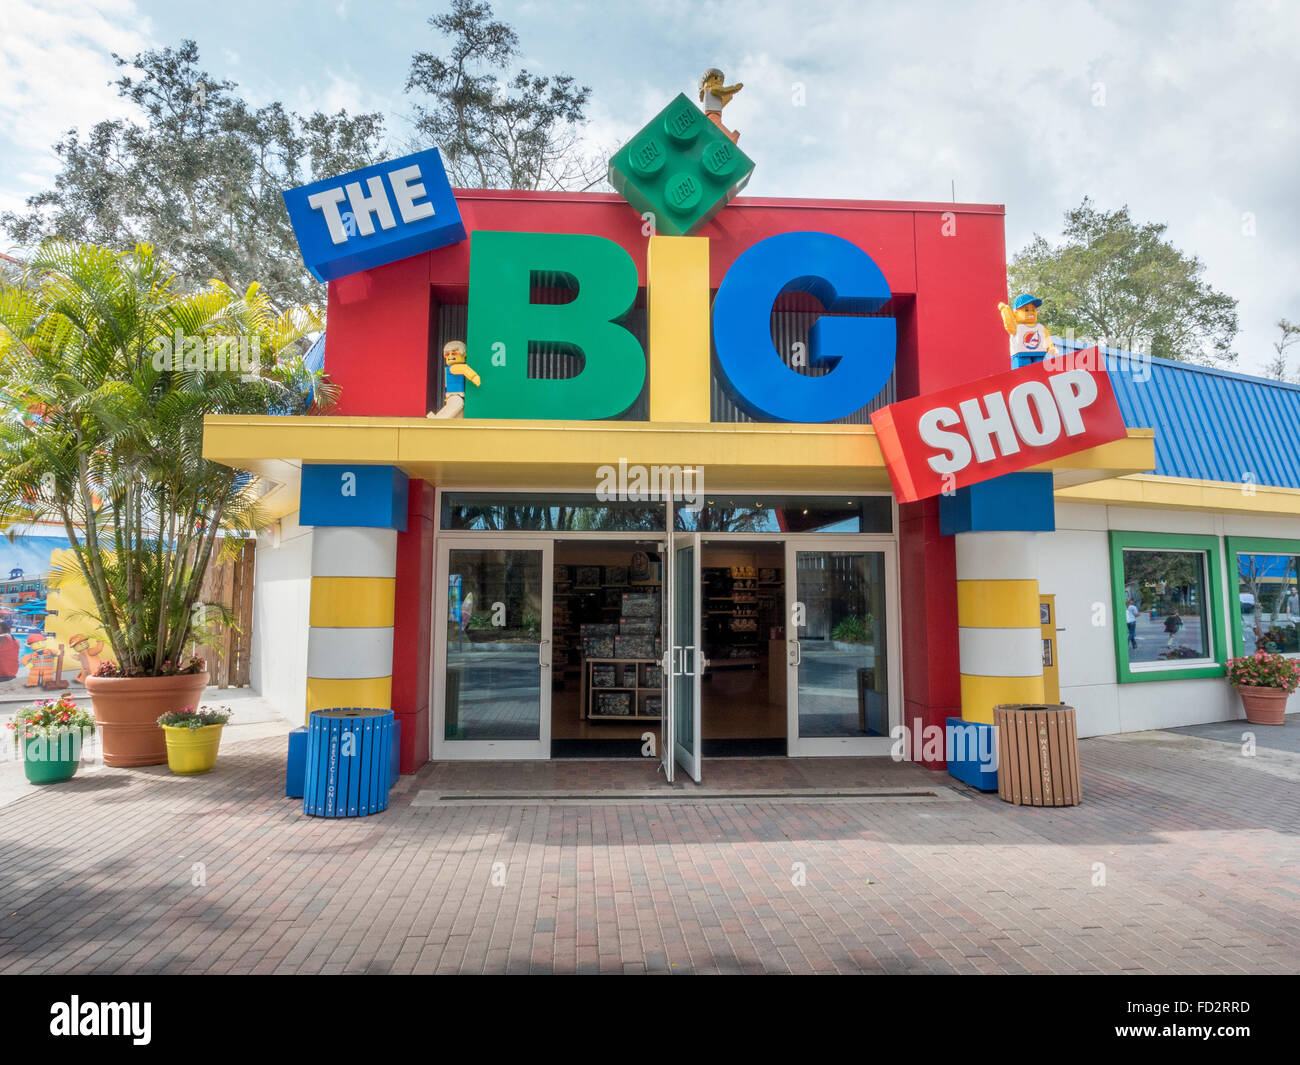 Le grand magasin à Legoland Florida un magasin vendant des marchandises et les jouets Lego Banque D'Images